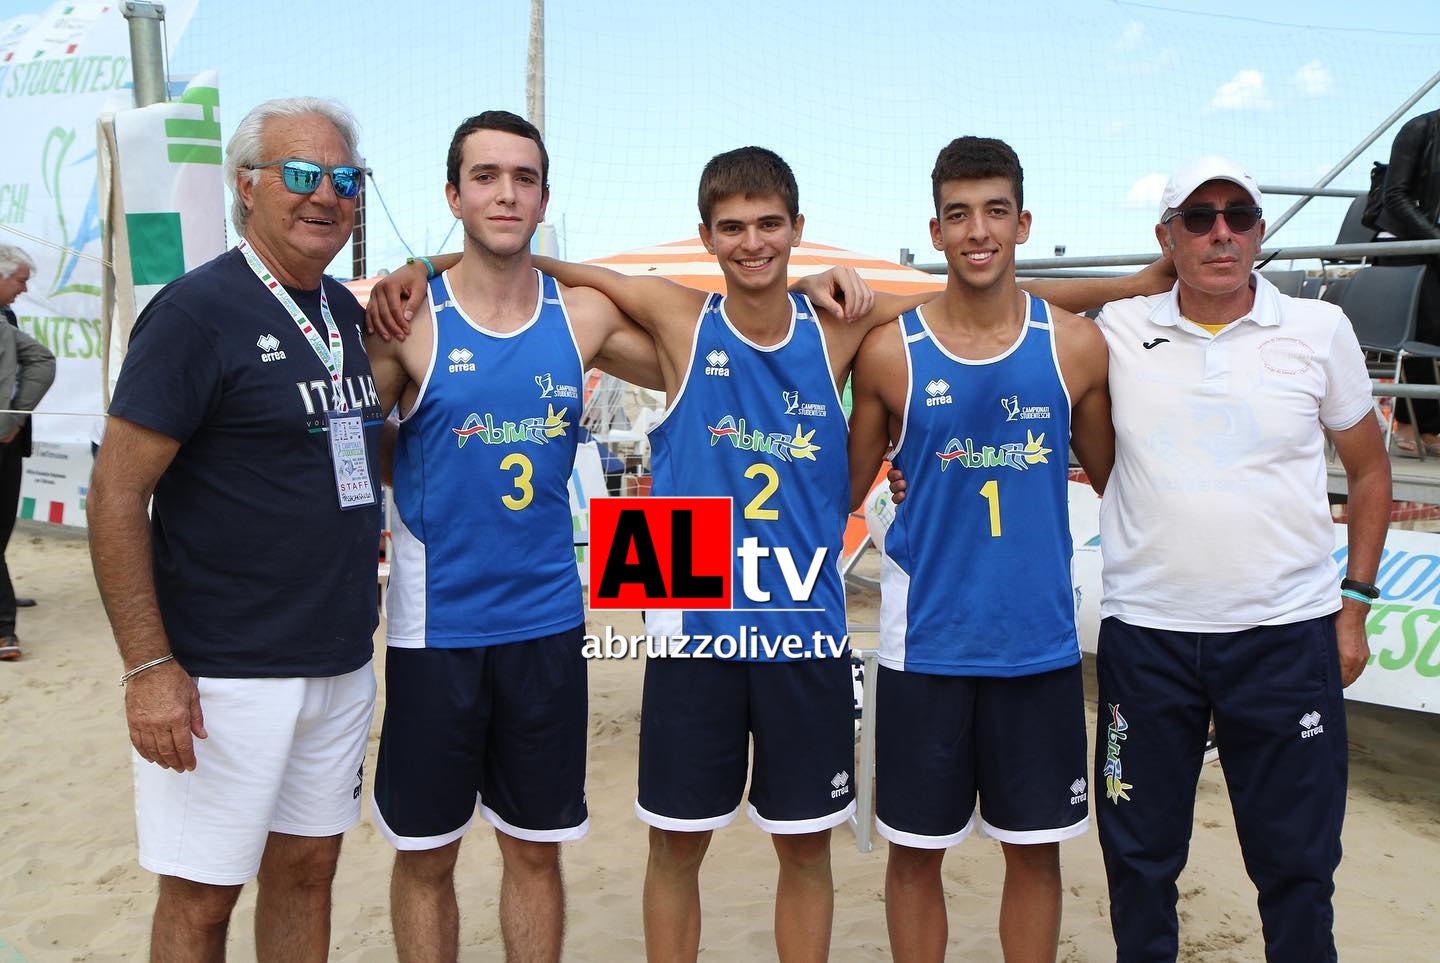 A Roseto l'Abruzzo trionfa ai Campionati nazionali studenteschi del beach volley maschile e va ai Mondiali